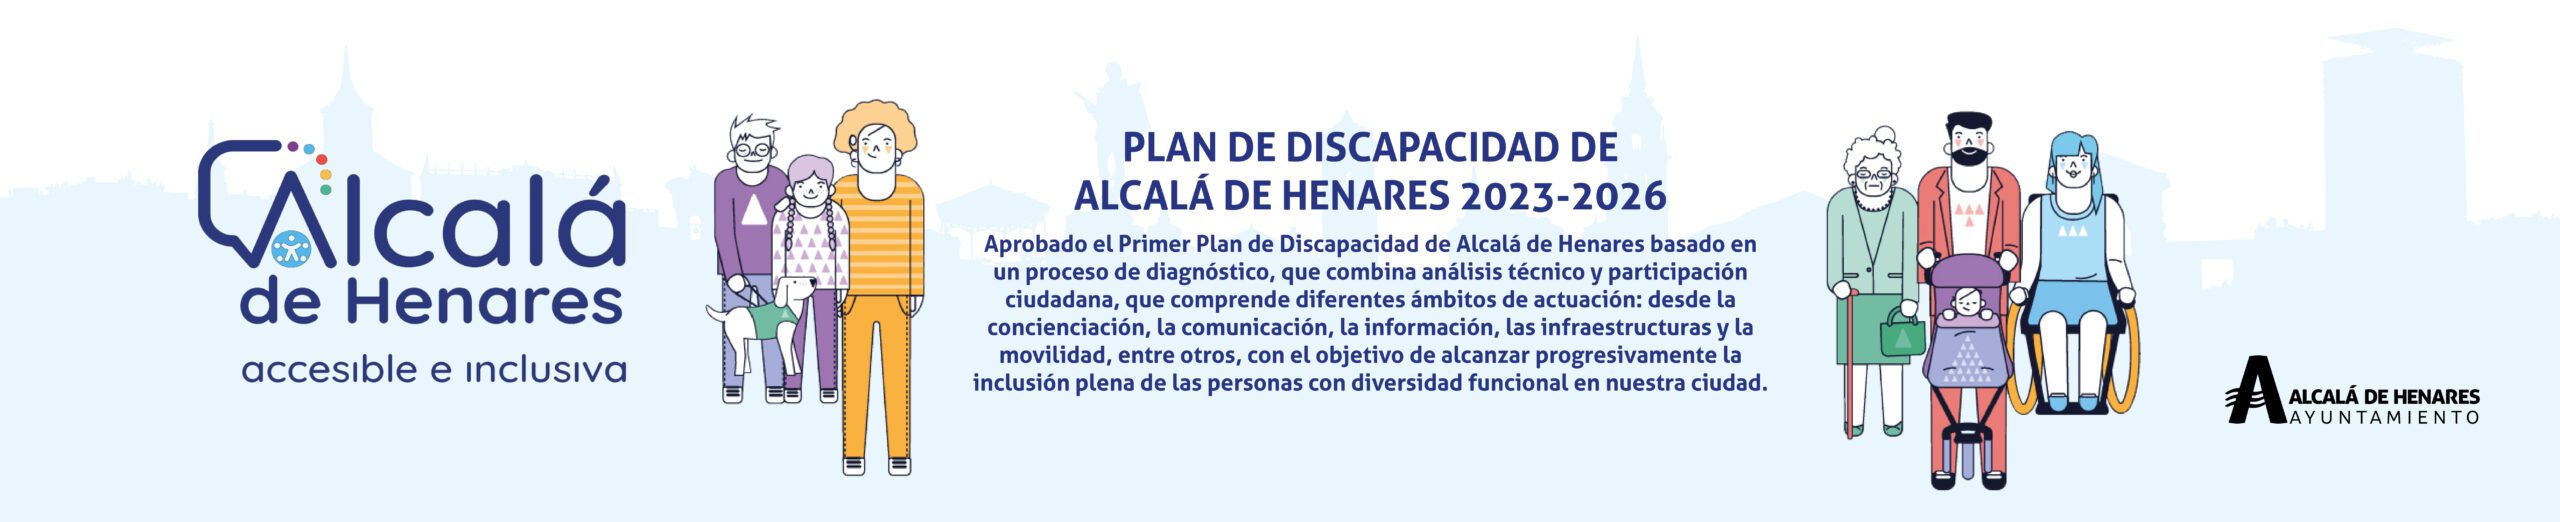 El Ayuntamiento de Alcalá tramitador oficial del Certificado Digital